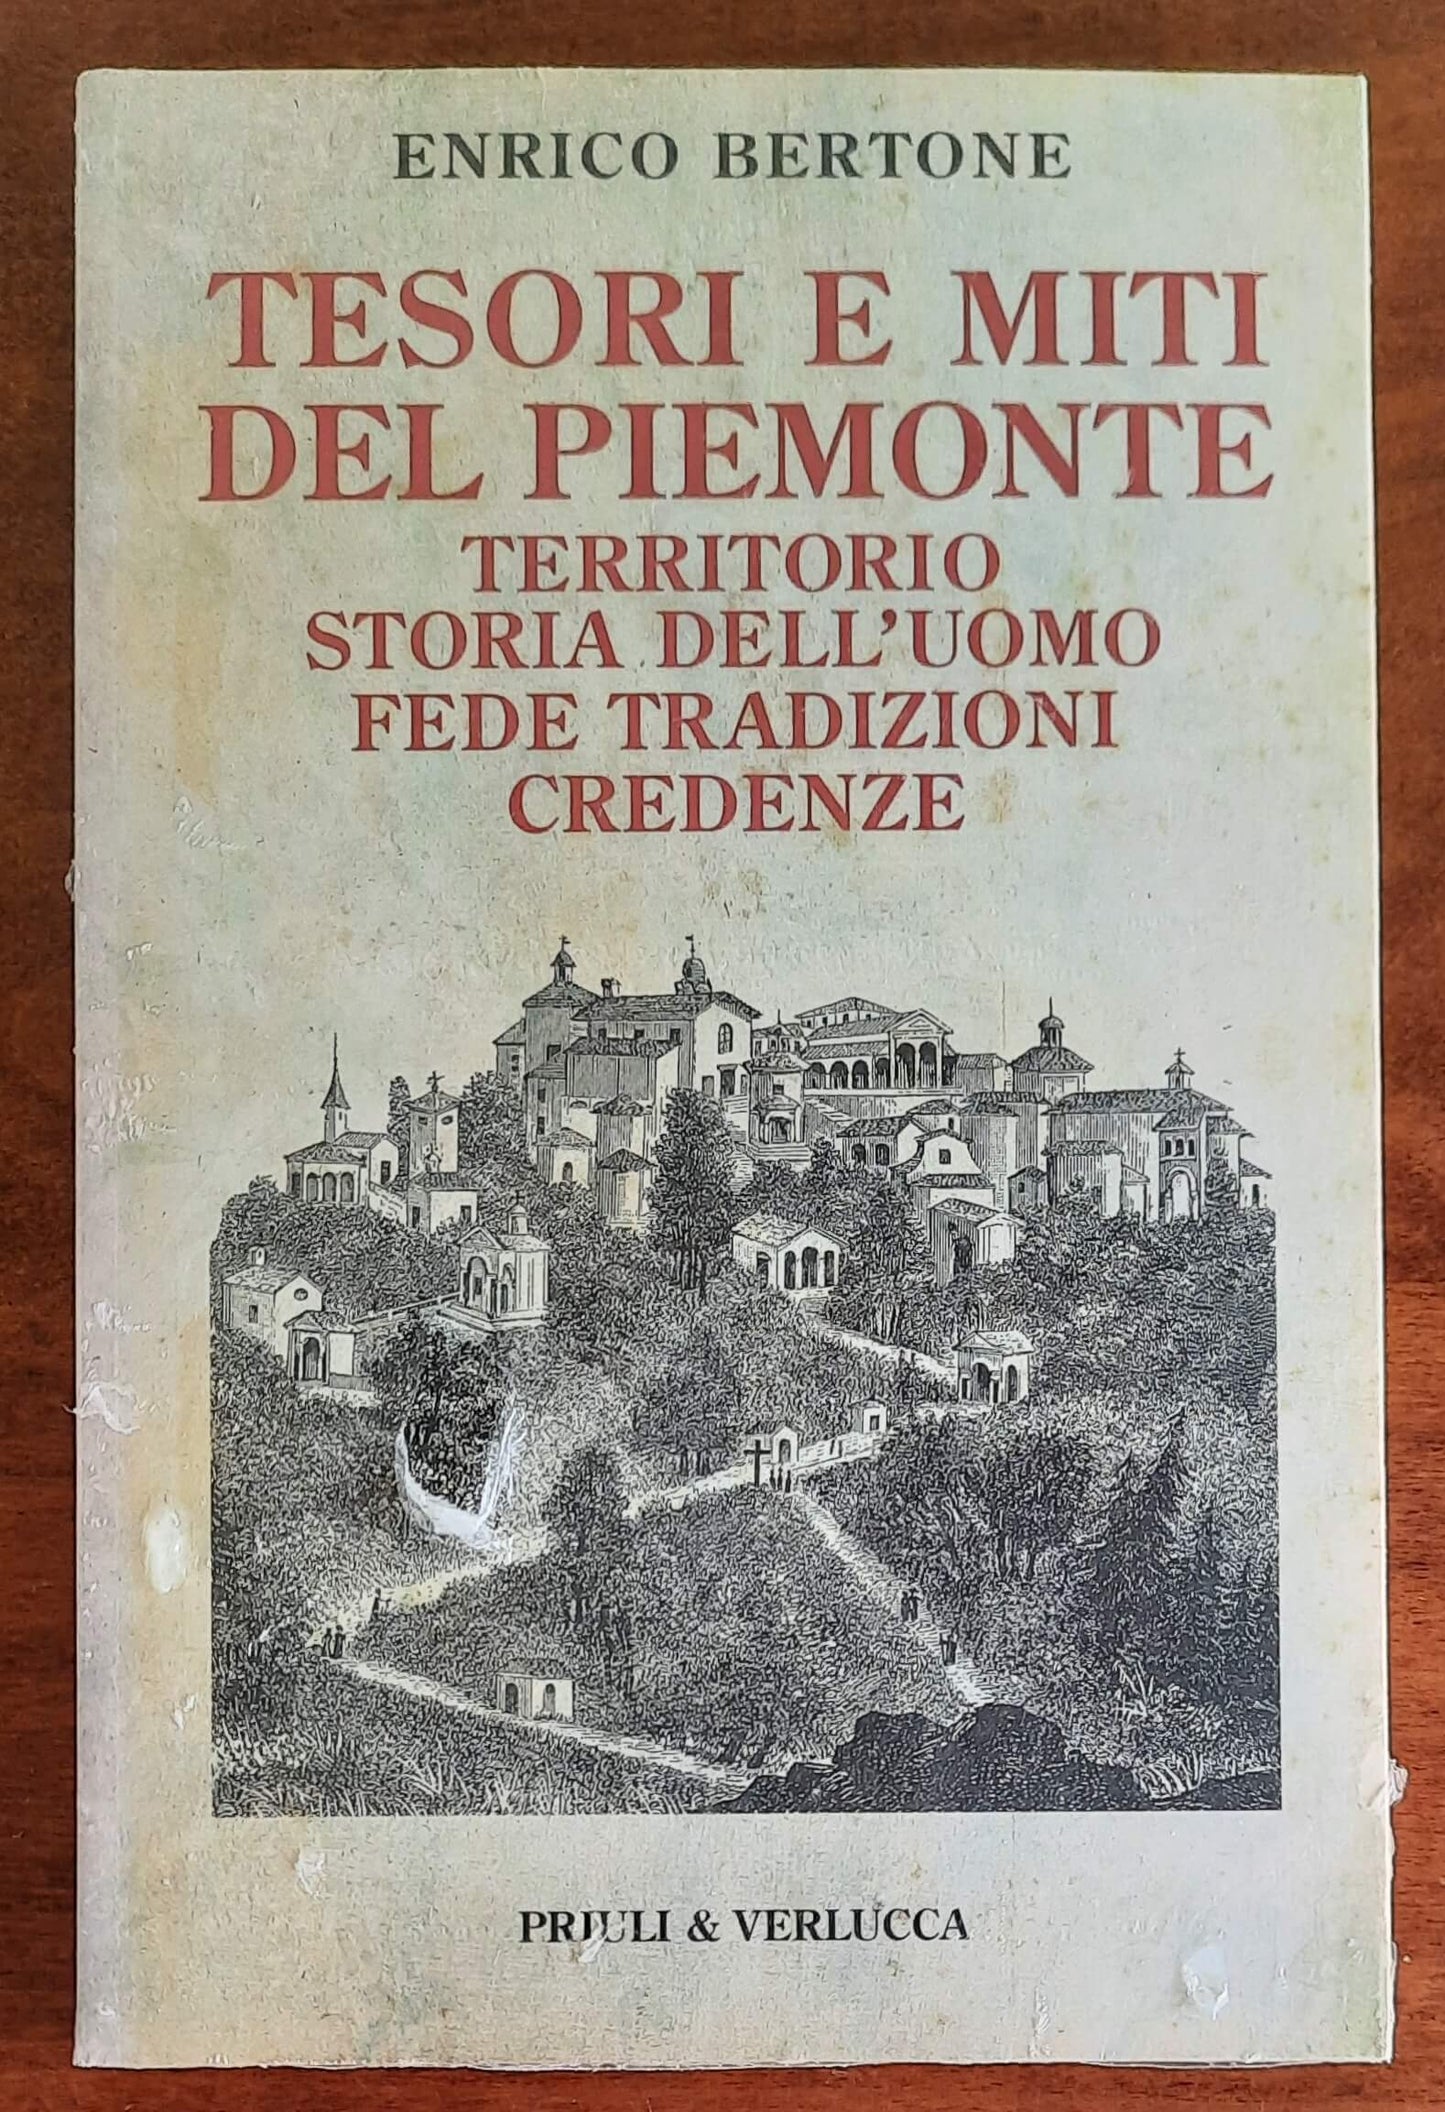 Tesori e miti del Piemonte. Territorio, storia dell’uomo, fede, tradizioni, credenze